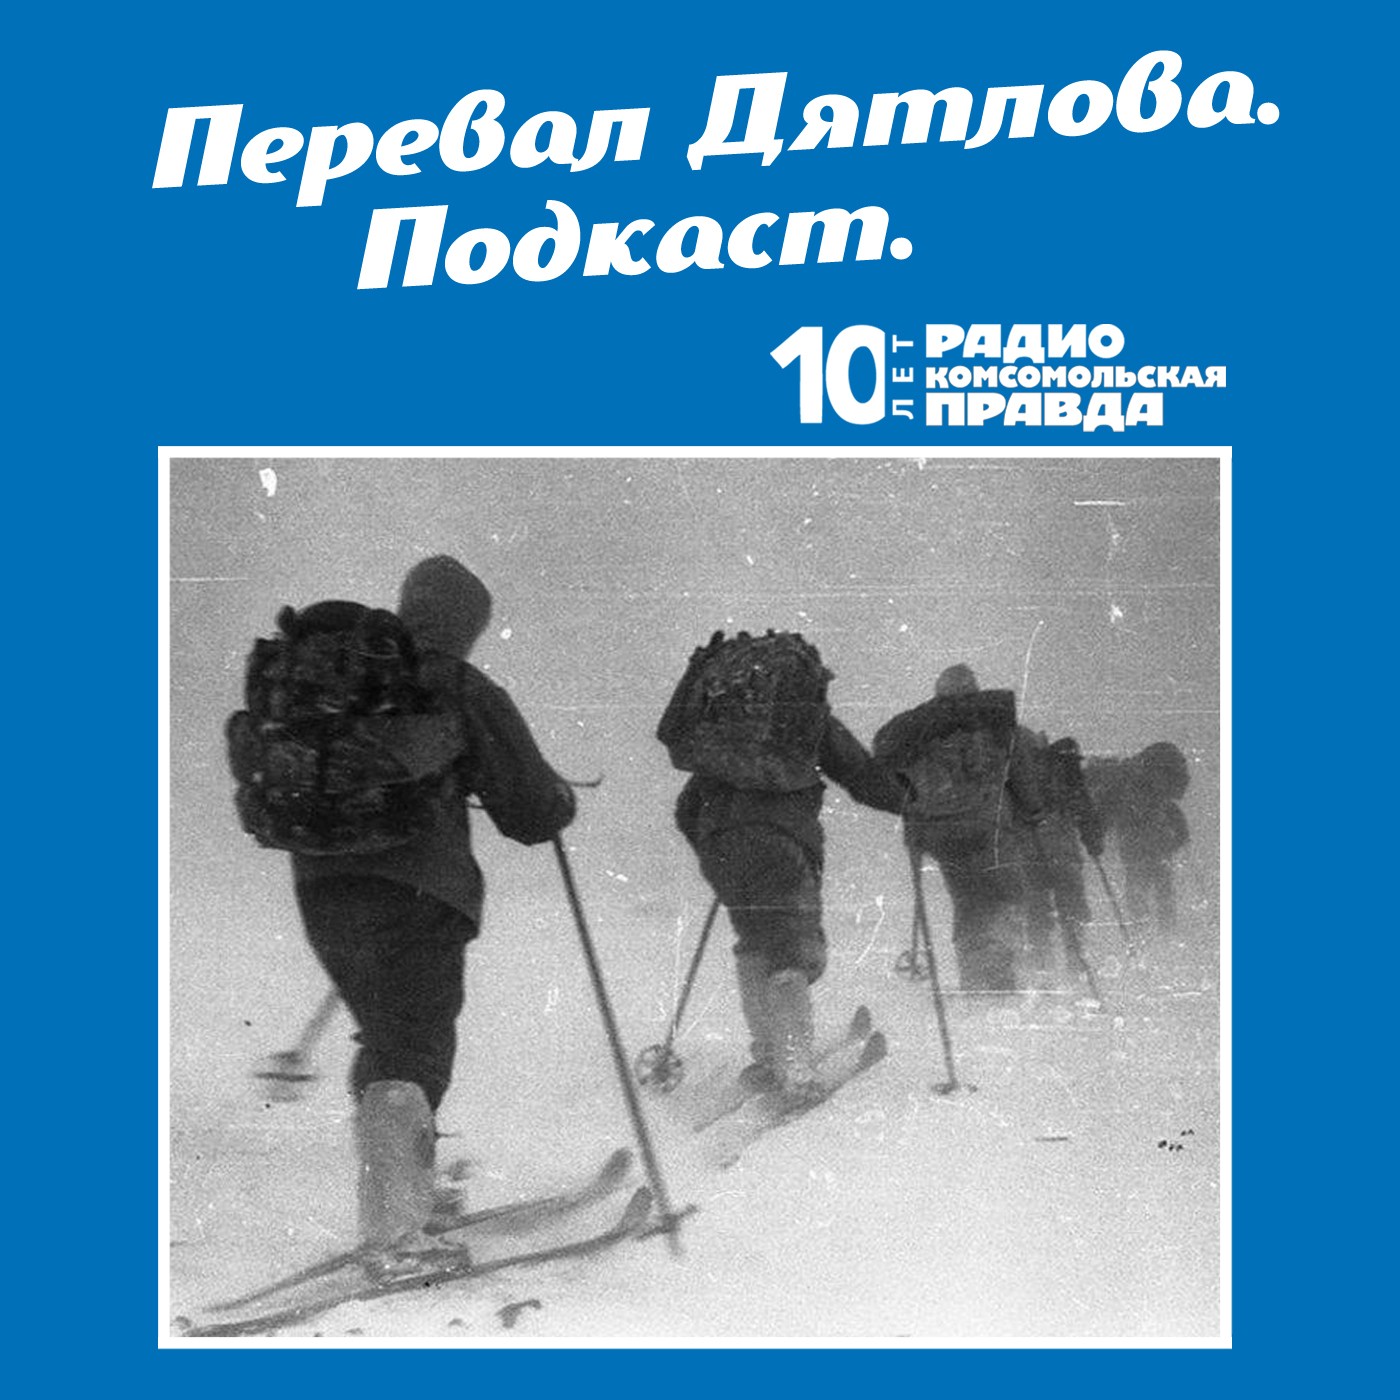 Скачать Трагедия на перевале Дятлова: 64 версии загадочной гибели туристов в 1959 году. Часть 109 и 110 - Радио «Комсомольская правда»